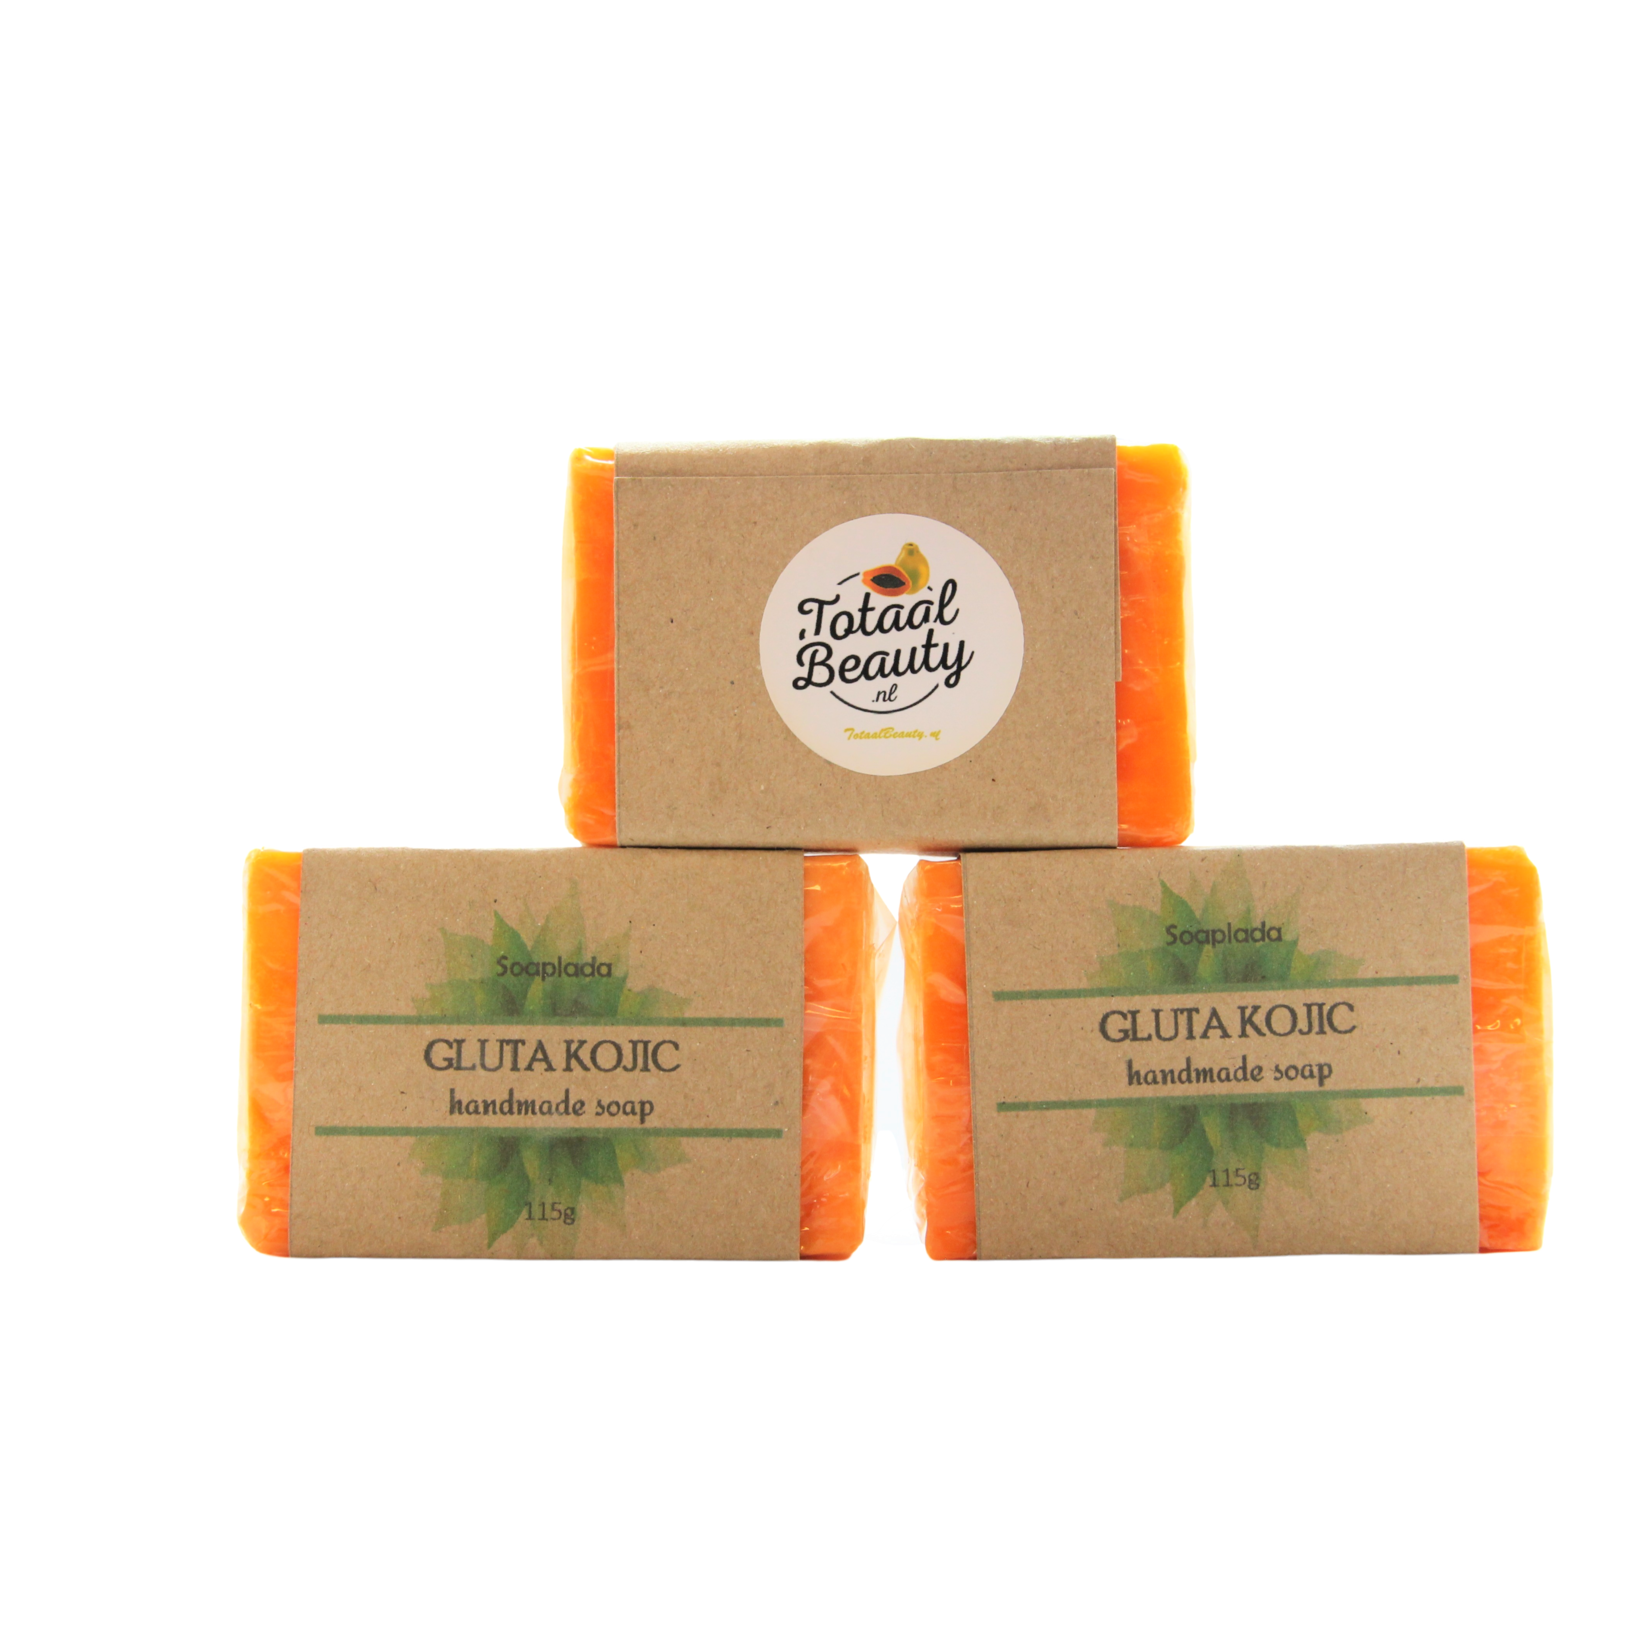 TotaalBeauty, de heerlijkste zepen van Top kwaliteit! Total Beauty Natural Soaps Selection Package. 4 + 1 free!